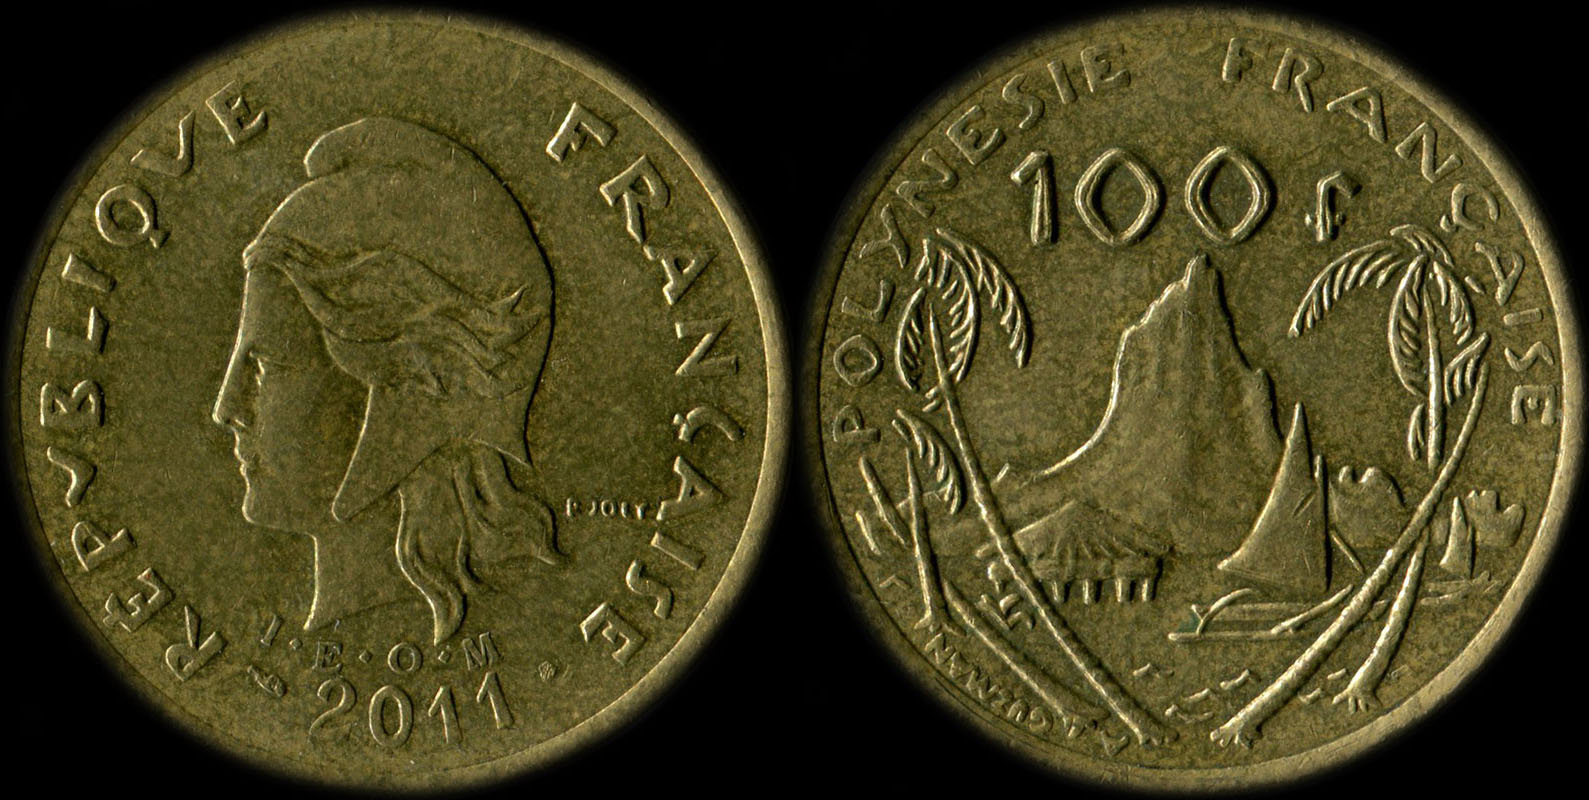 Pièce de 100 francs 2011 - I.E.O.M. Polynésie française